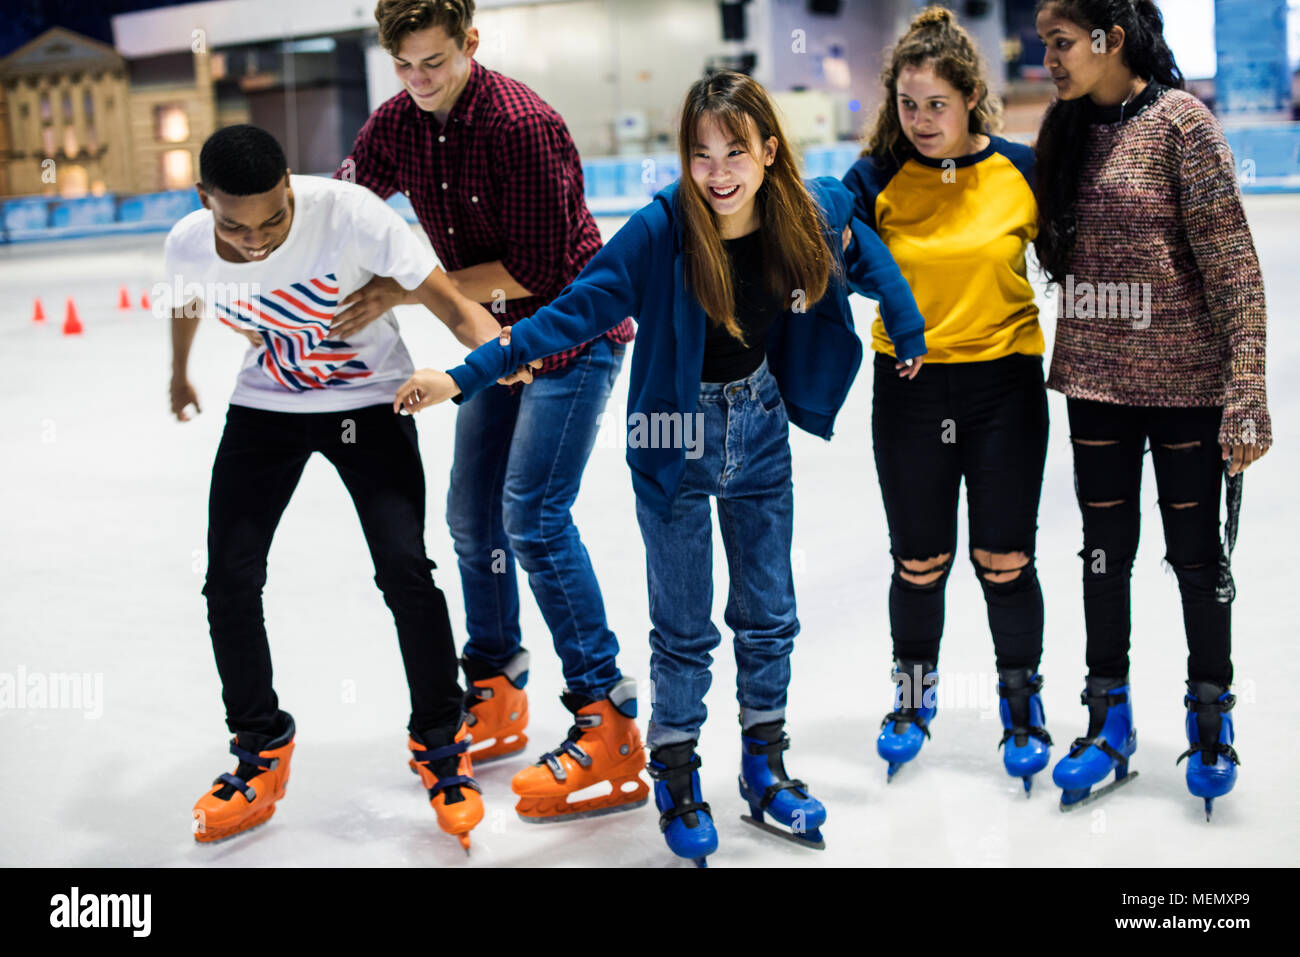 Gruppe von Jugendlichen freunden Eislaufen auf einer Eisbahn Stockfoto